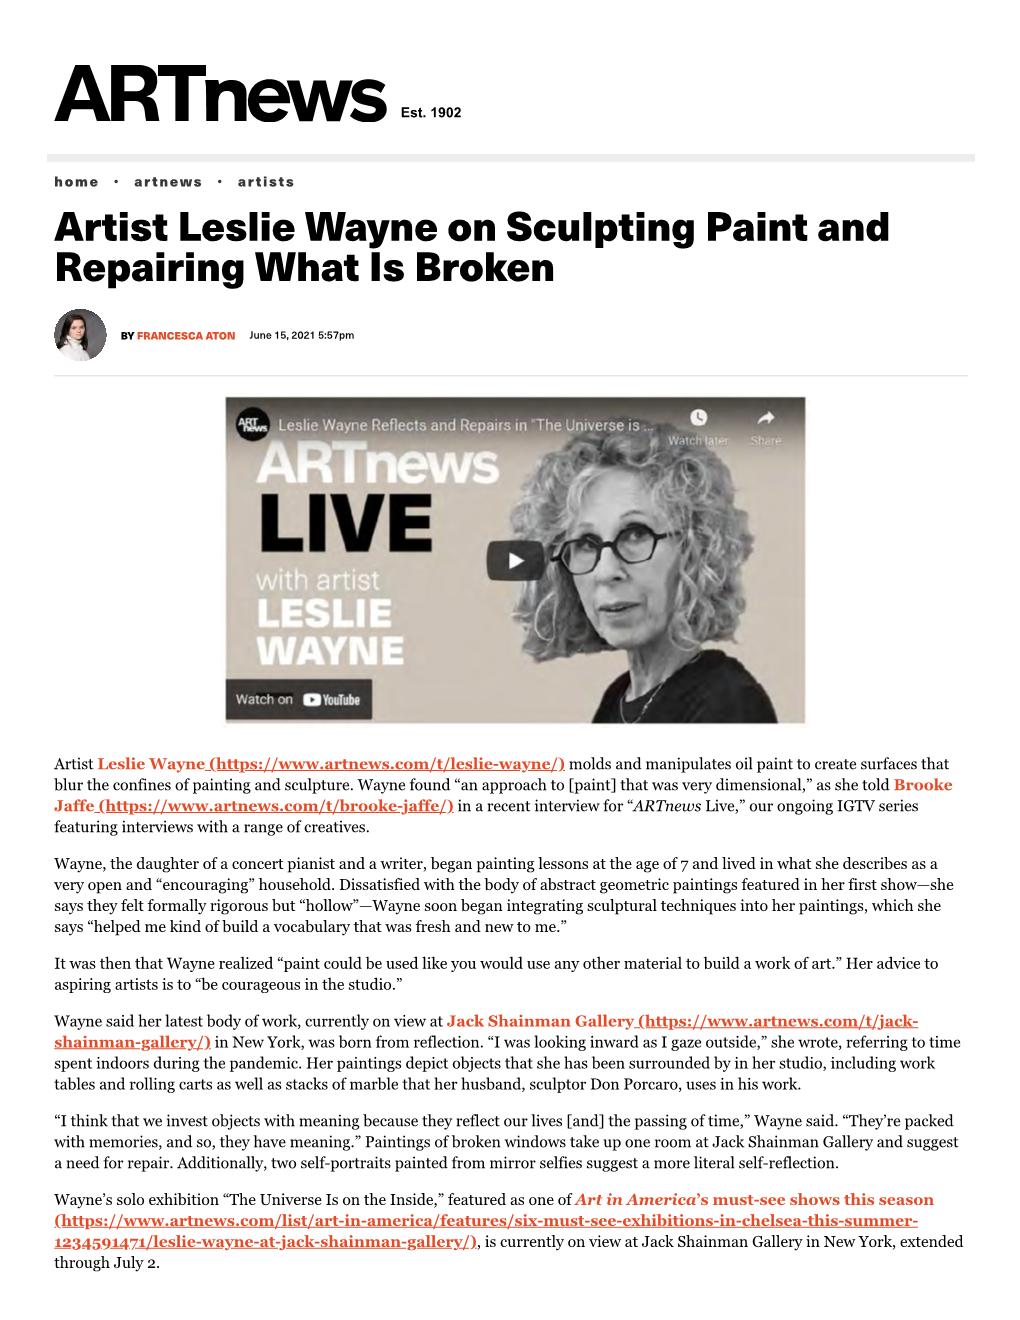 Leslie Wayne on Sculpting Paint and Repairing What Is Broken